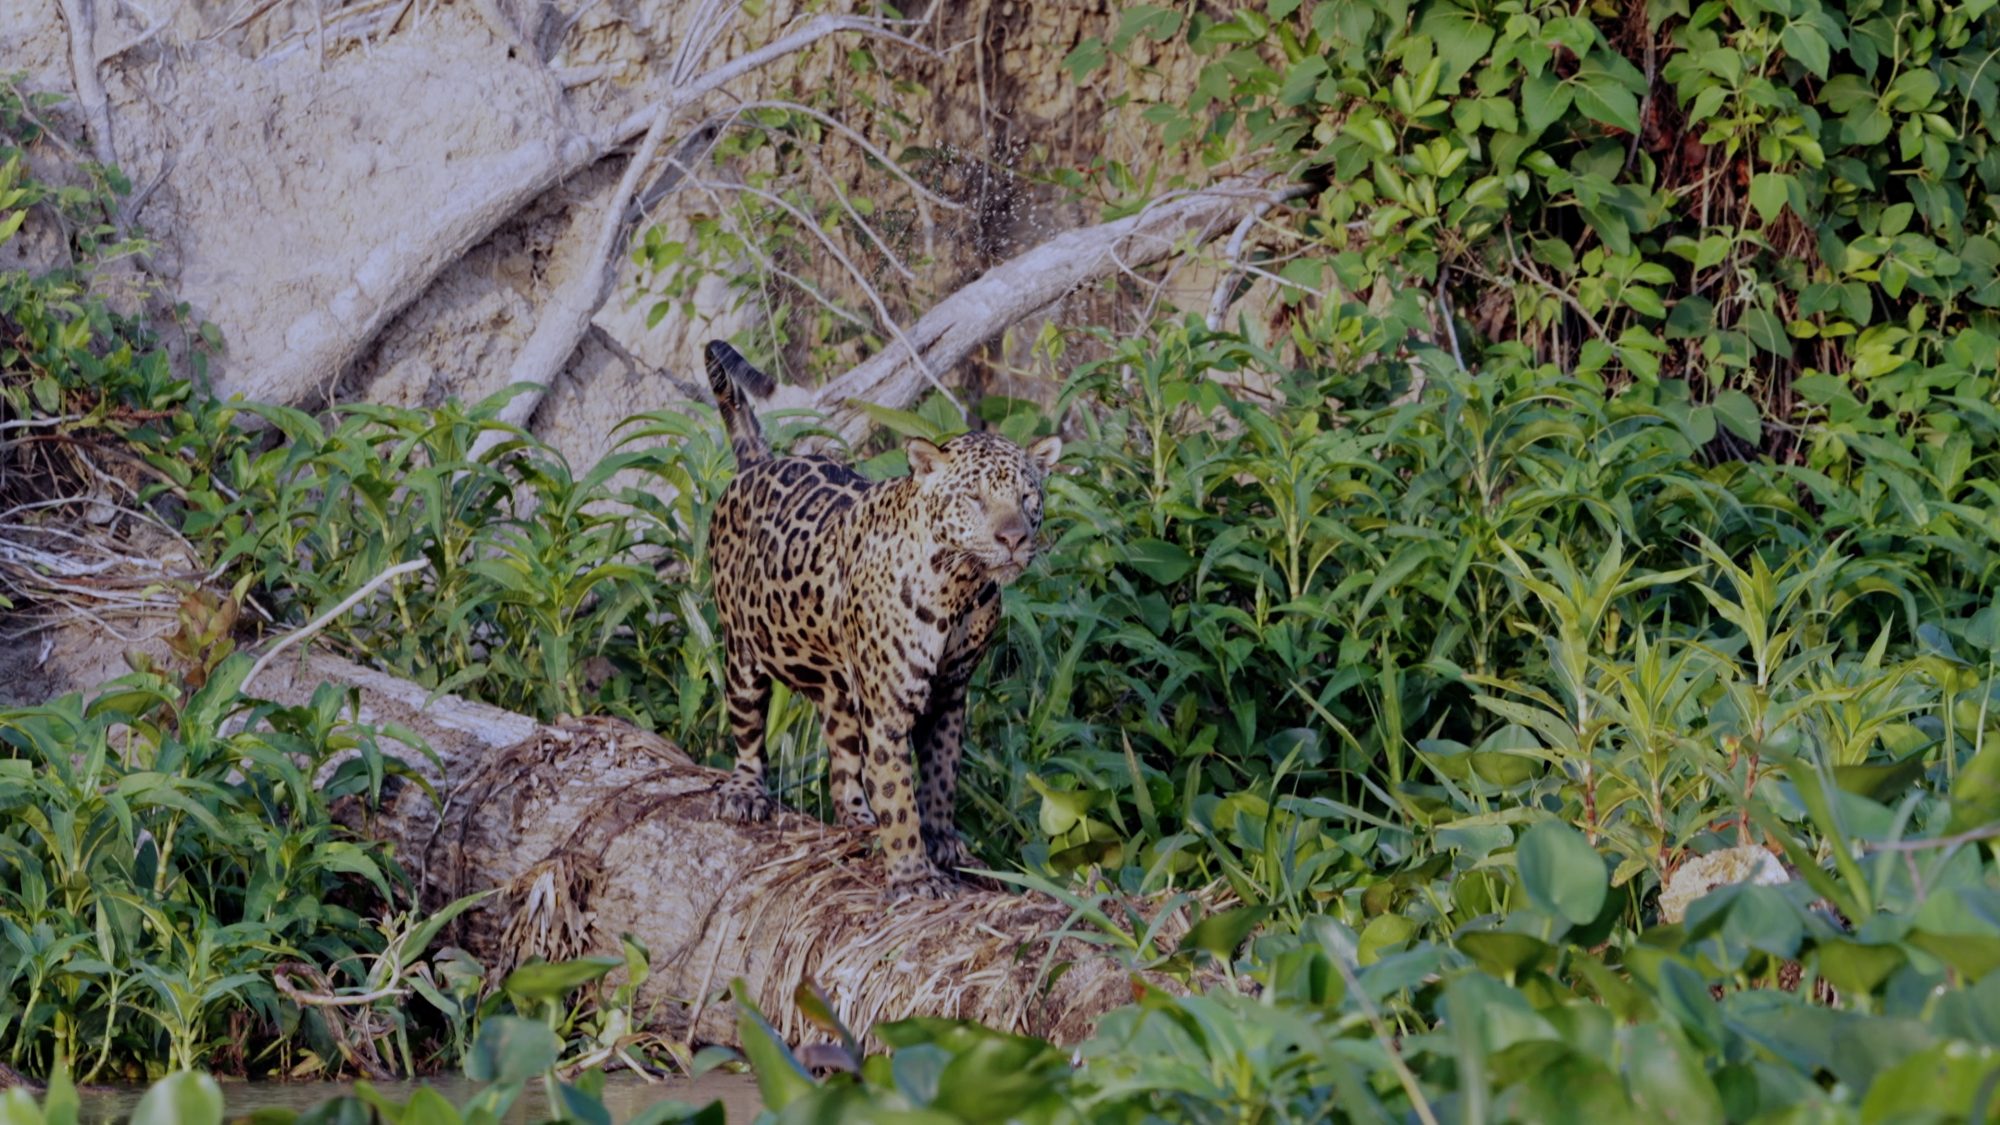 Magnificent male Jaguar – Pantanal, Brazil 2022